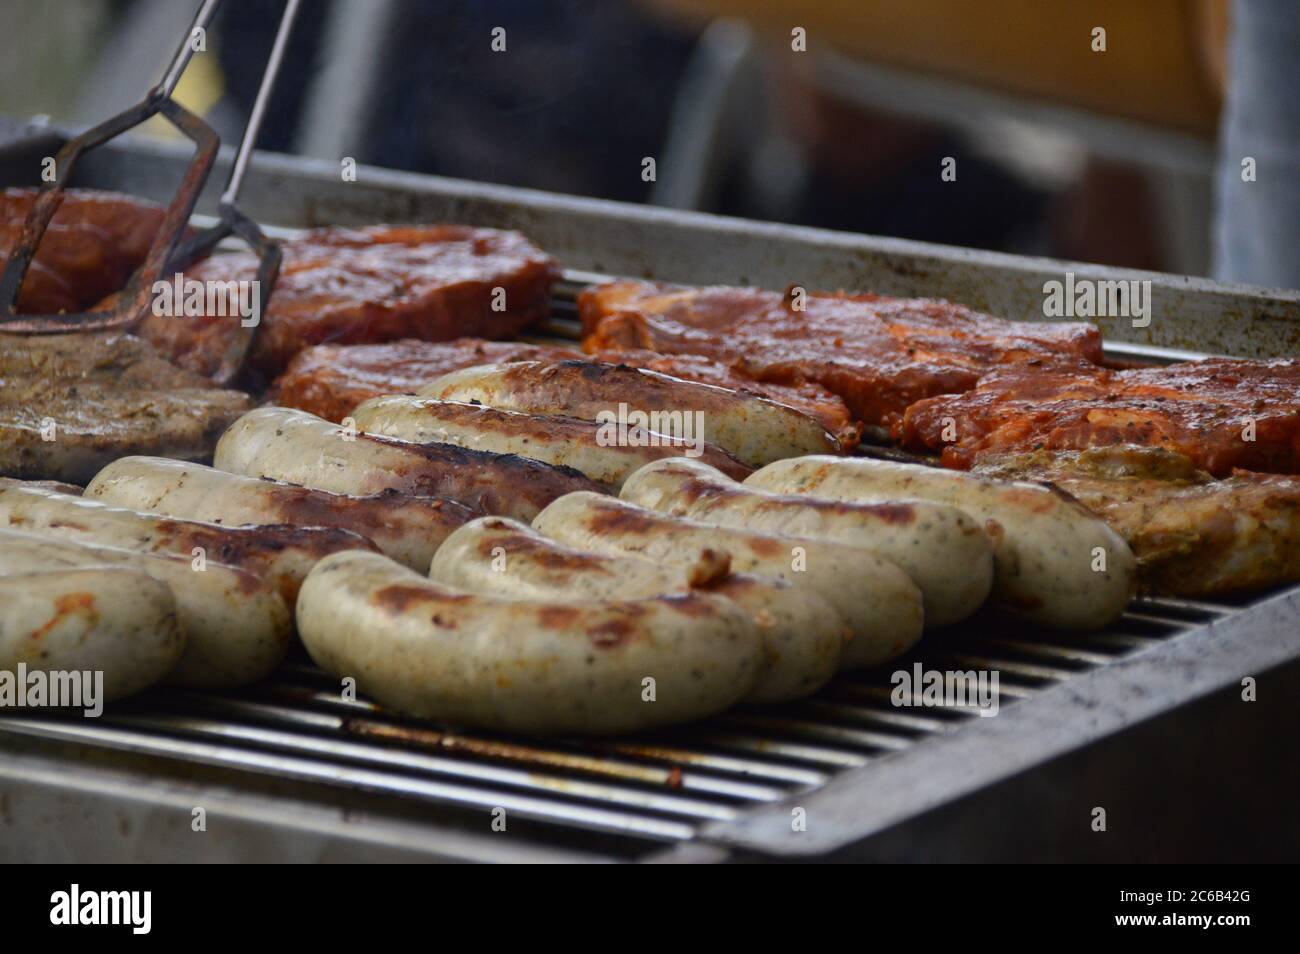 Grillwurst und Fleisch , Steak auf einem Holzkohle Grill Stock Photo - Alamy